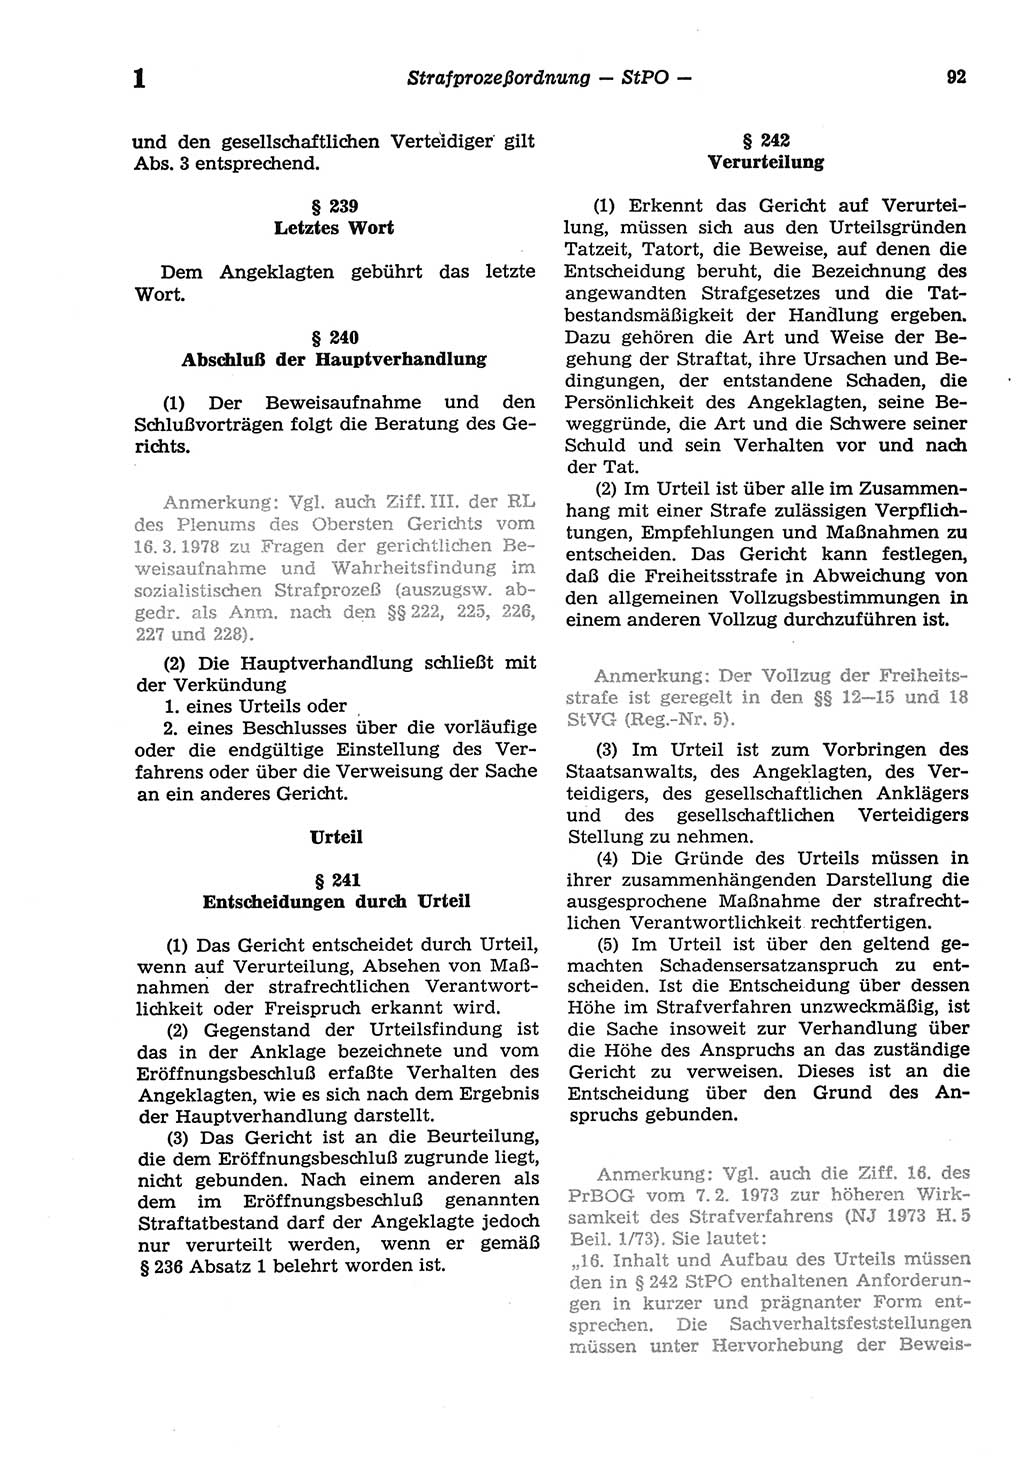 Strafprozeßordnung (StPO) der Deutschen Demokratischen Republik (DDR) sowie angrenzende Gesetze und Bestimmungen 1977, Seite 92 (StPO DDR Ges. Best. 1977, S. 92)